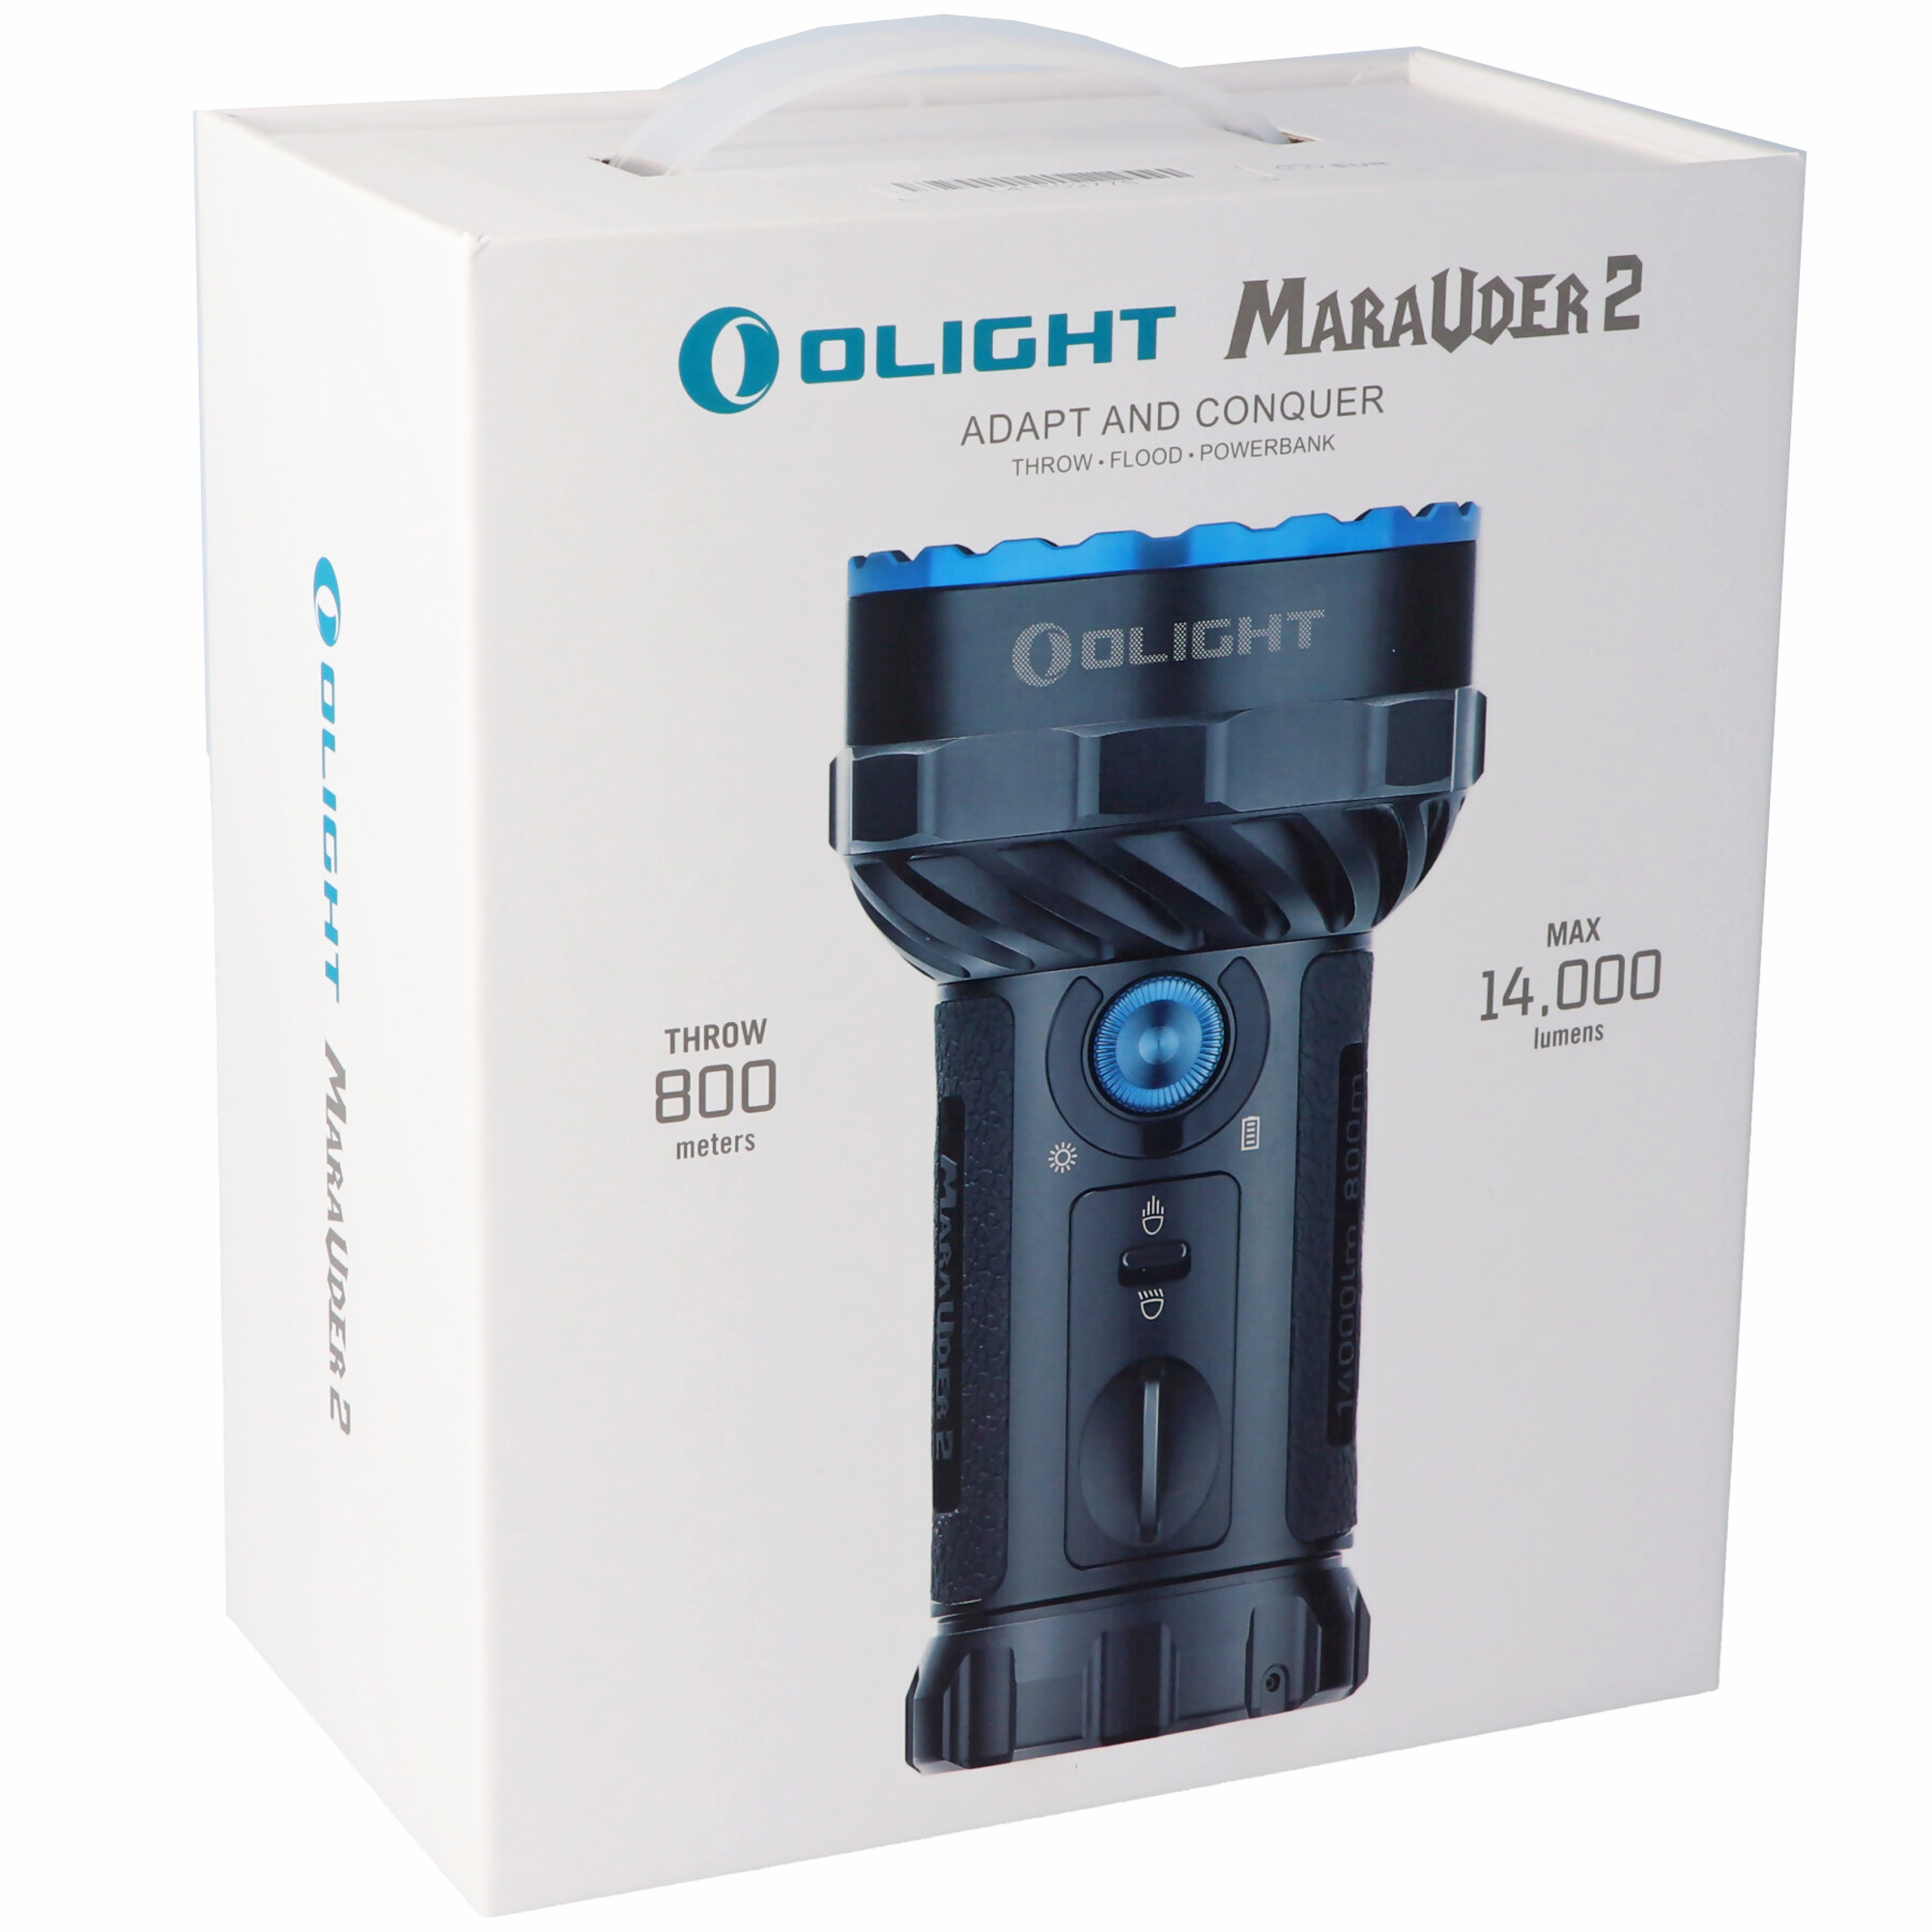 LED-Taschenlampe Olight Marauder 2 max. 14.000 Lumen, Leuchtweite bis zu 800 Meter weit